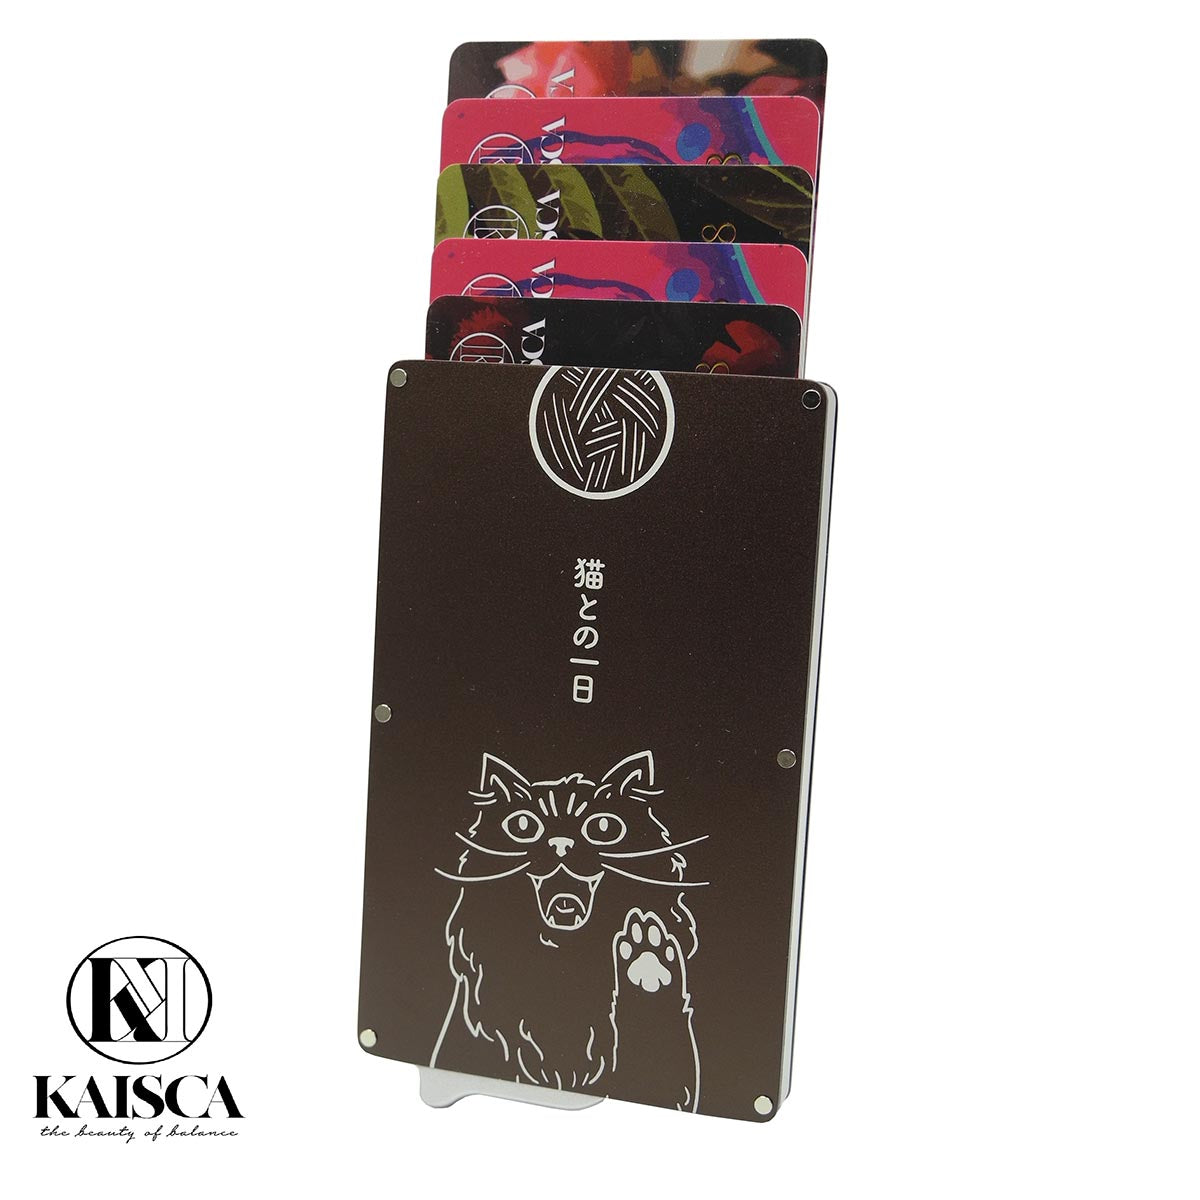 [寄海外] Kaisca - RFID智能防護鋁盒卡套 - 寵物伊甸園系與貓的日常(蒂芙尼藍/啡/橙黃)